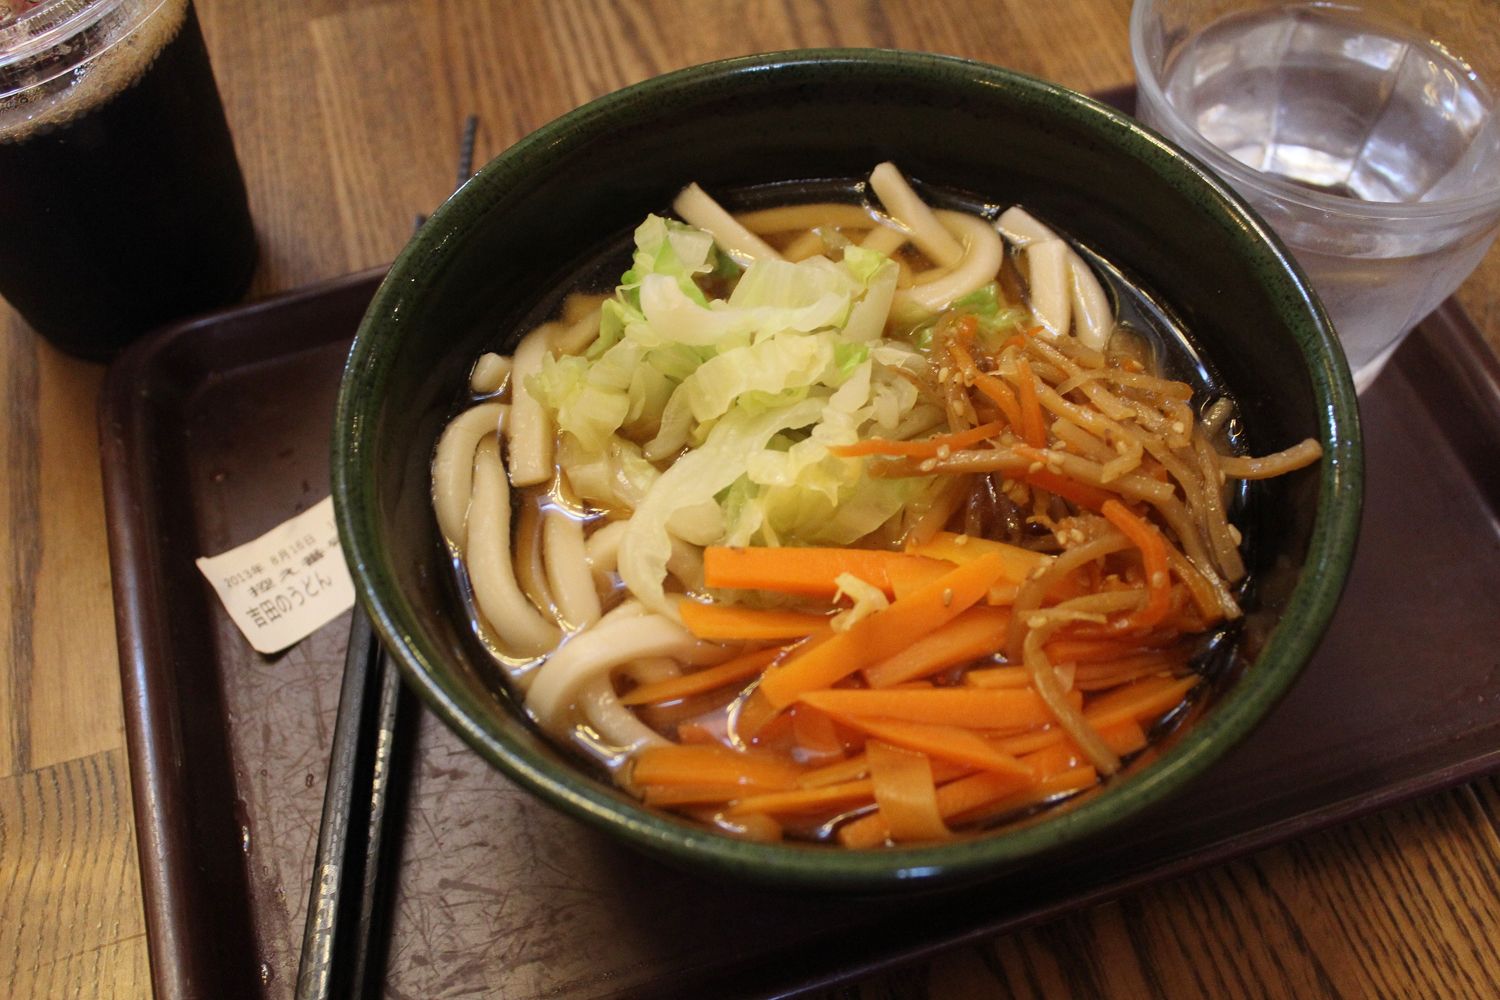 local udon noodles